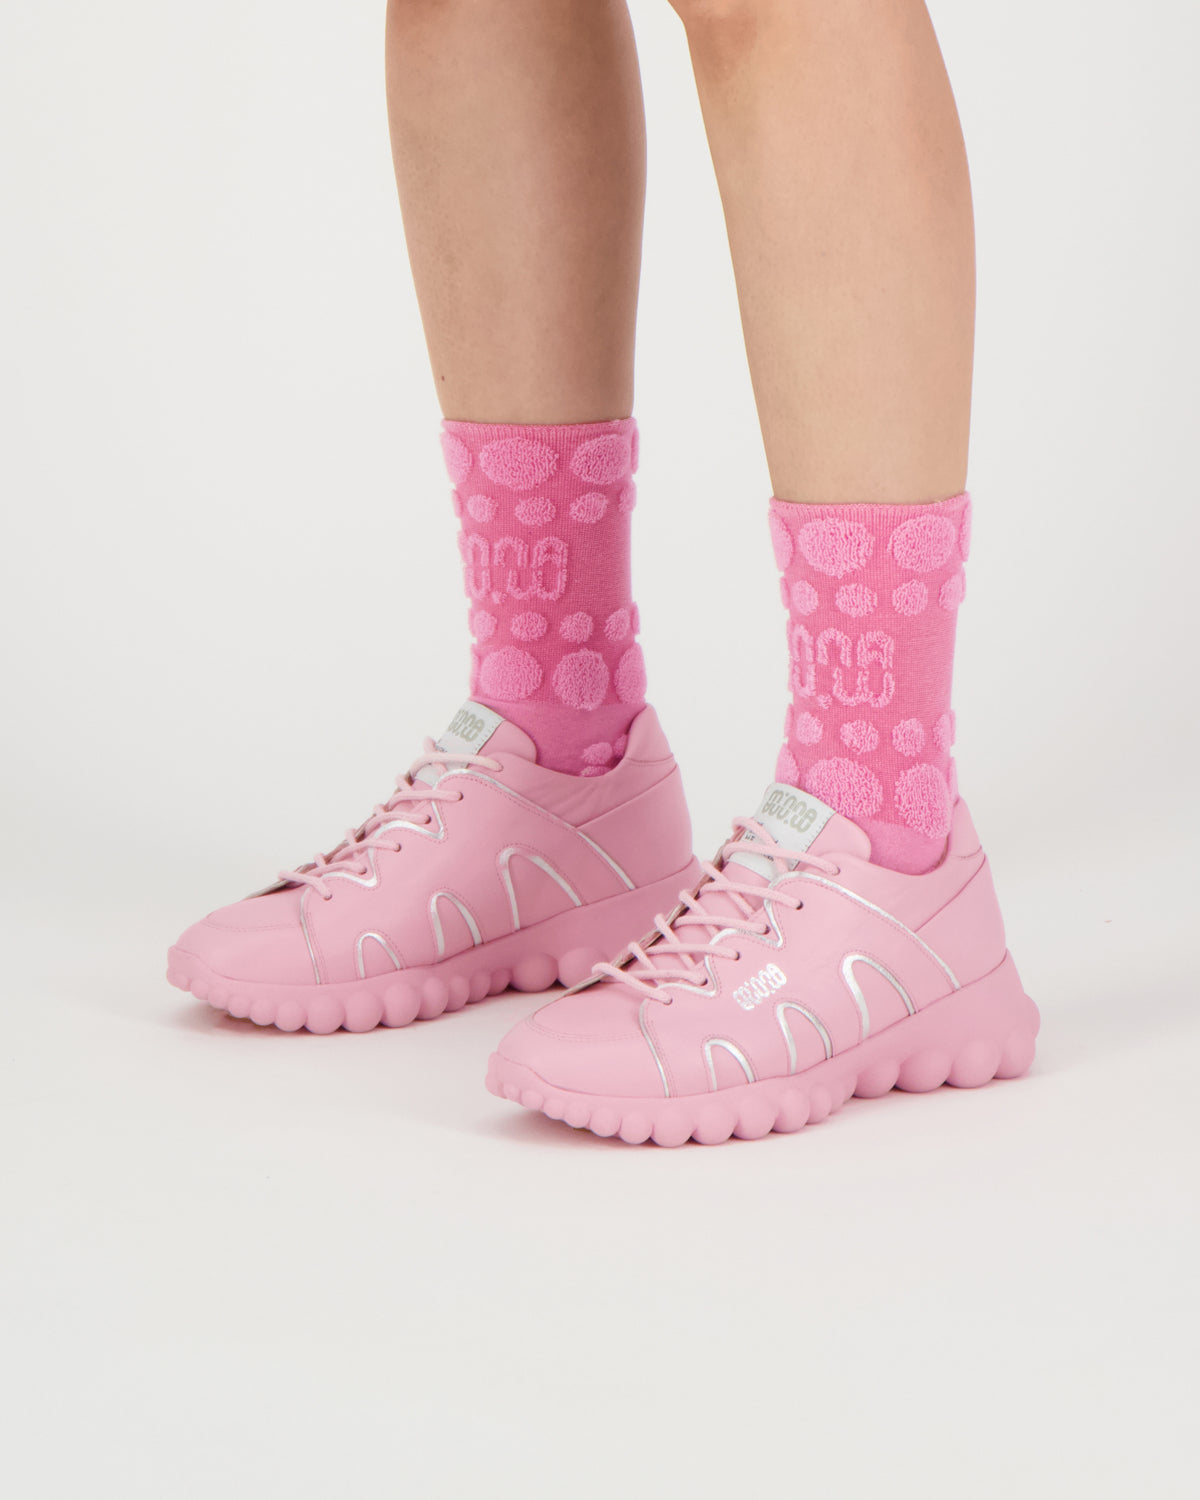 PEARL Candy Socks